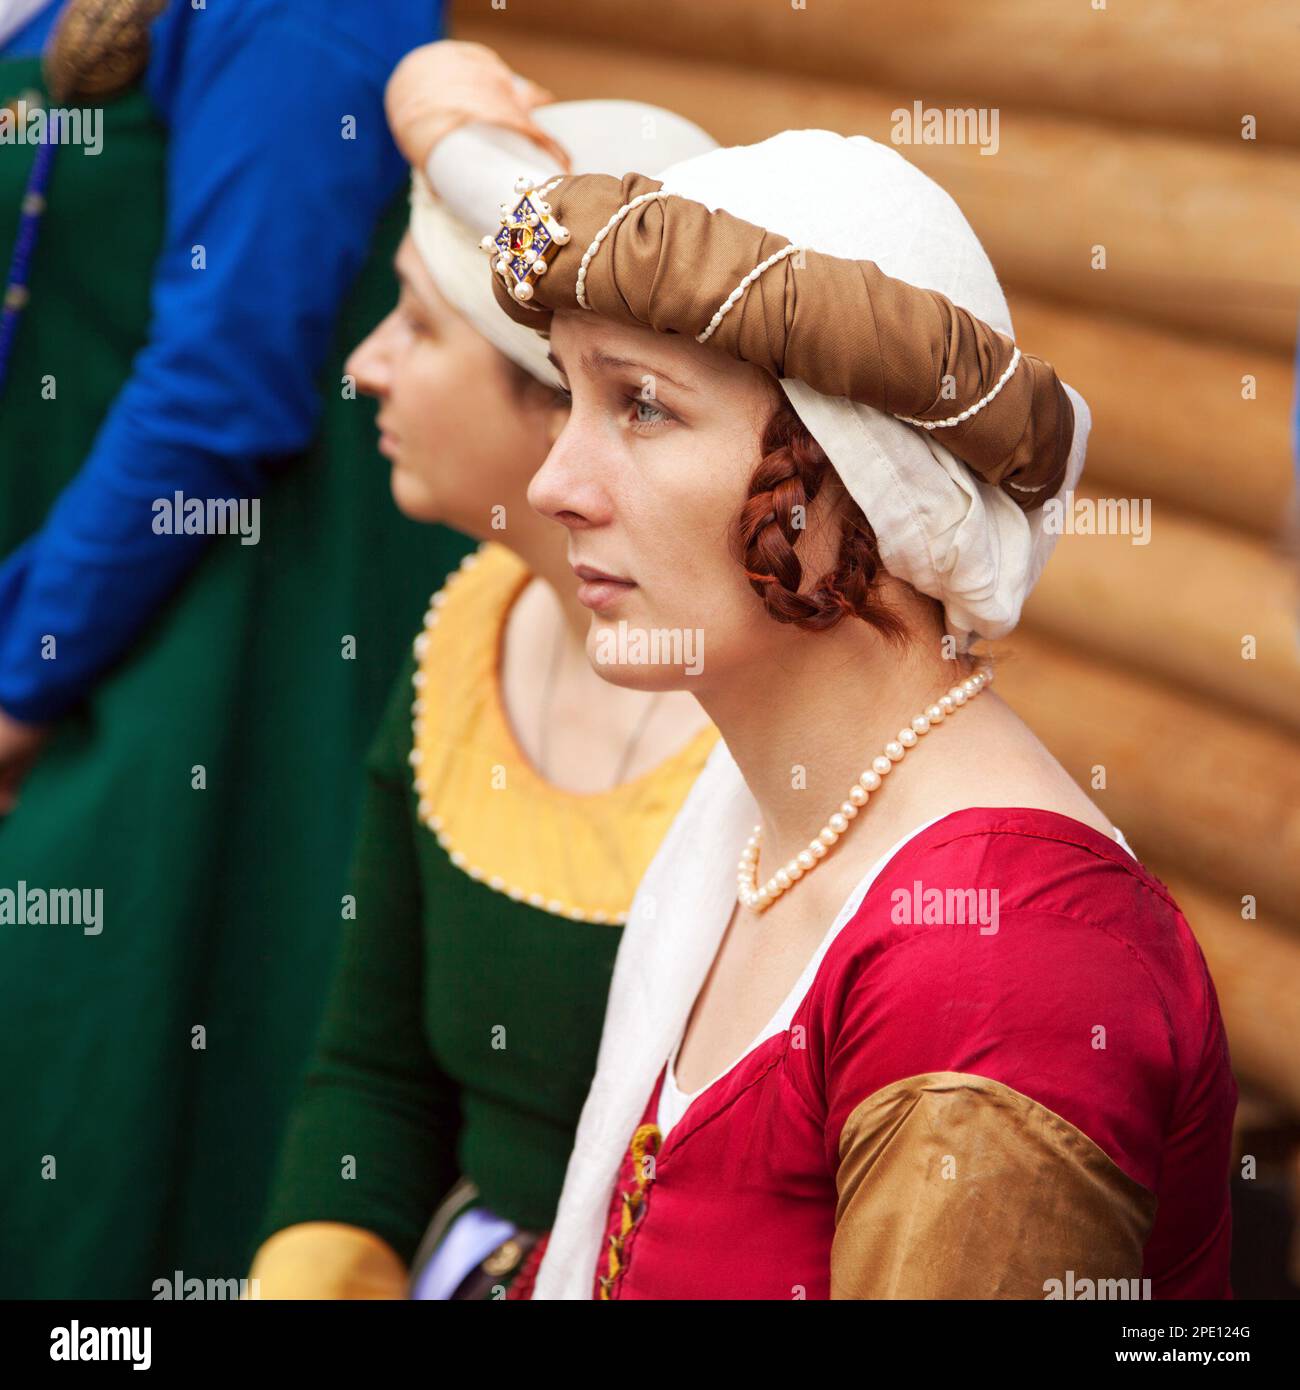 Khabarovsk, Russie - 11 juin 2017 : Moyen age costume - jeune noble dame portant une robe rouge, coiffures et tresses, coiffure. Caucasian woman Banque D'Images